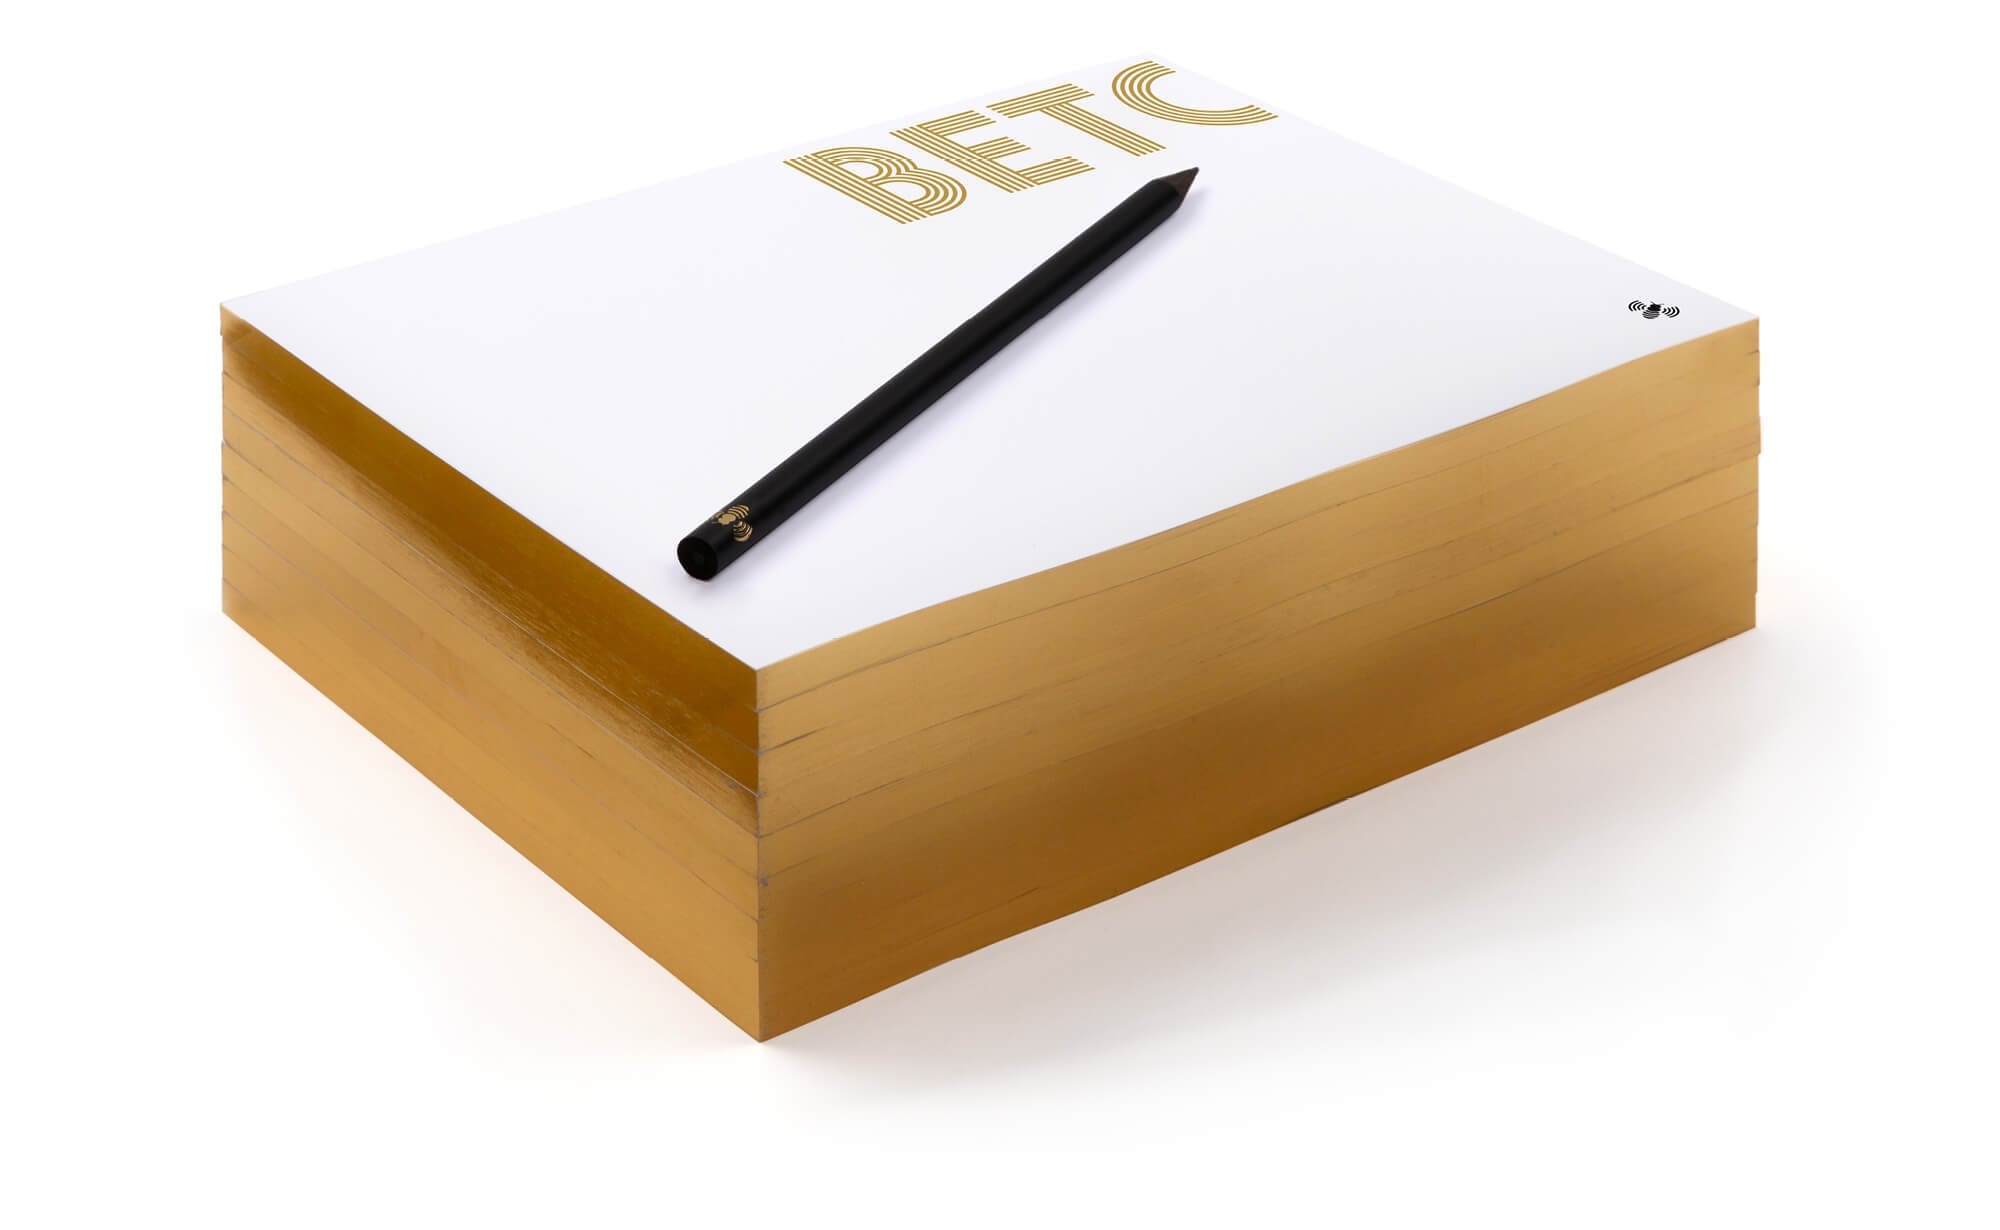 Le bloc note de l'agence de publicité BETC, dorure, logo et abeille qui se balade de feuilles en feuilles, design IchetKar